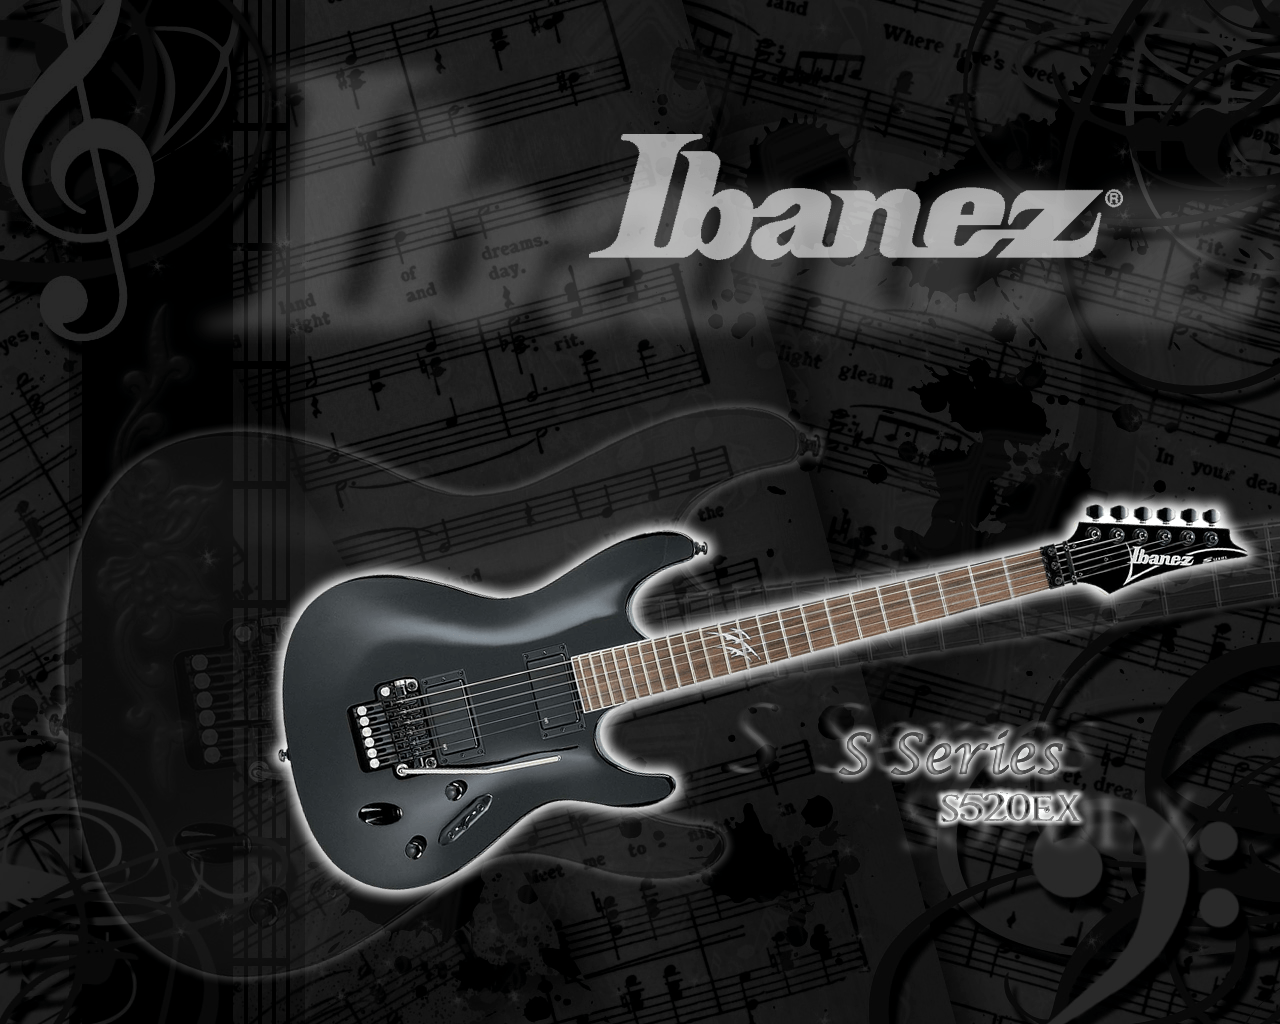 Ibanez Bass Guitar Wallpaper